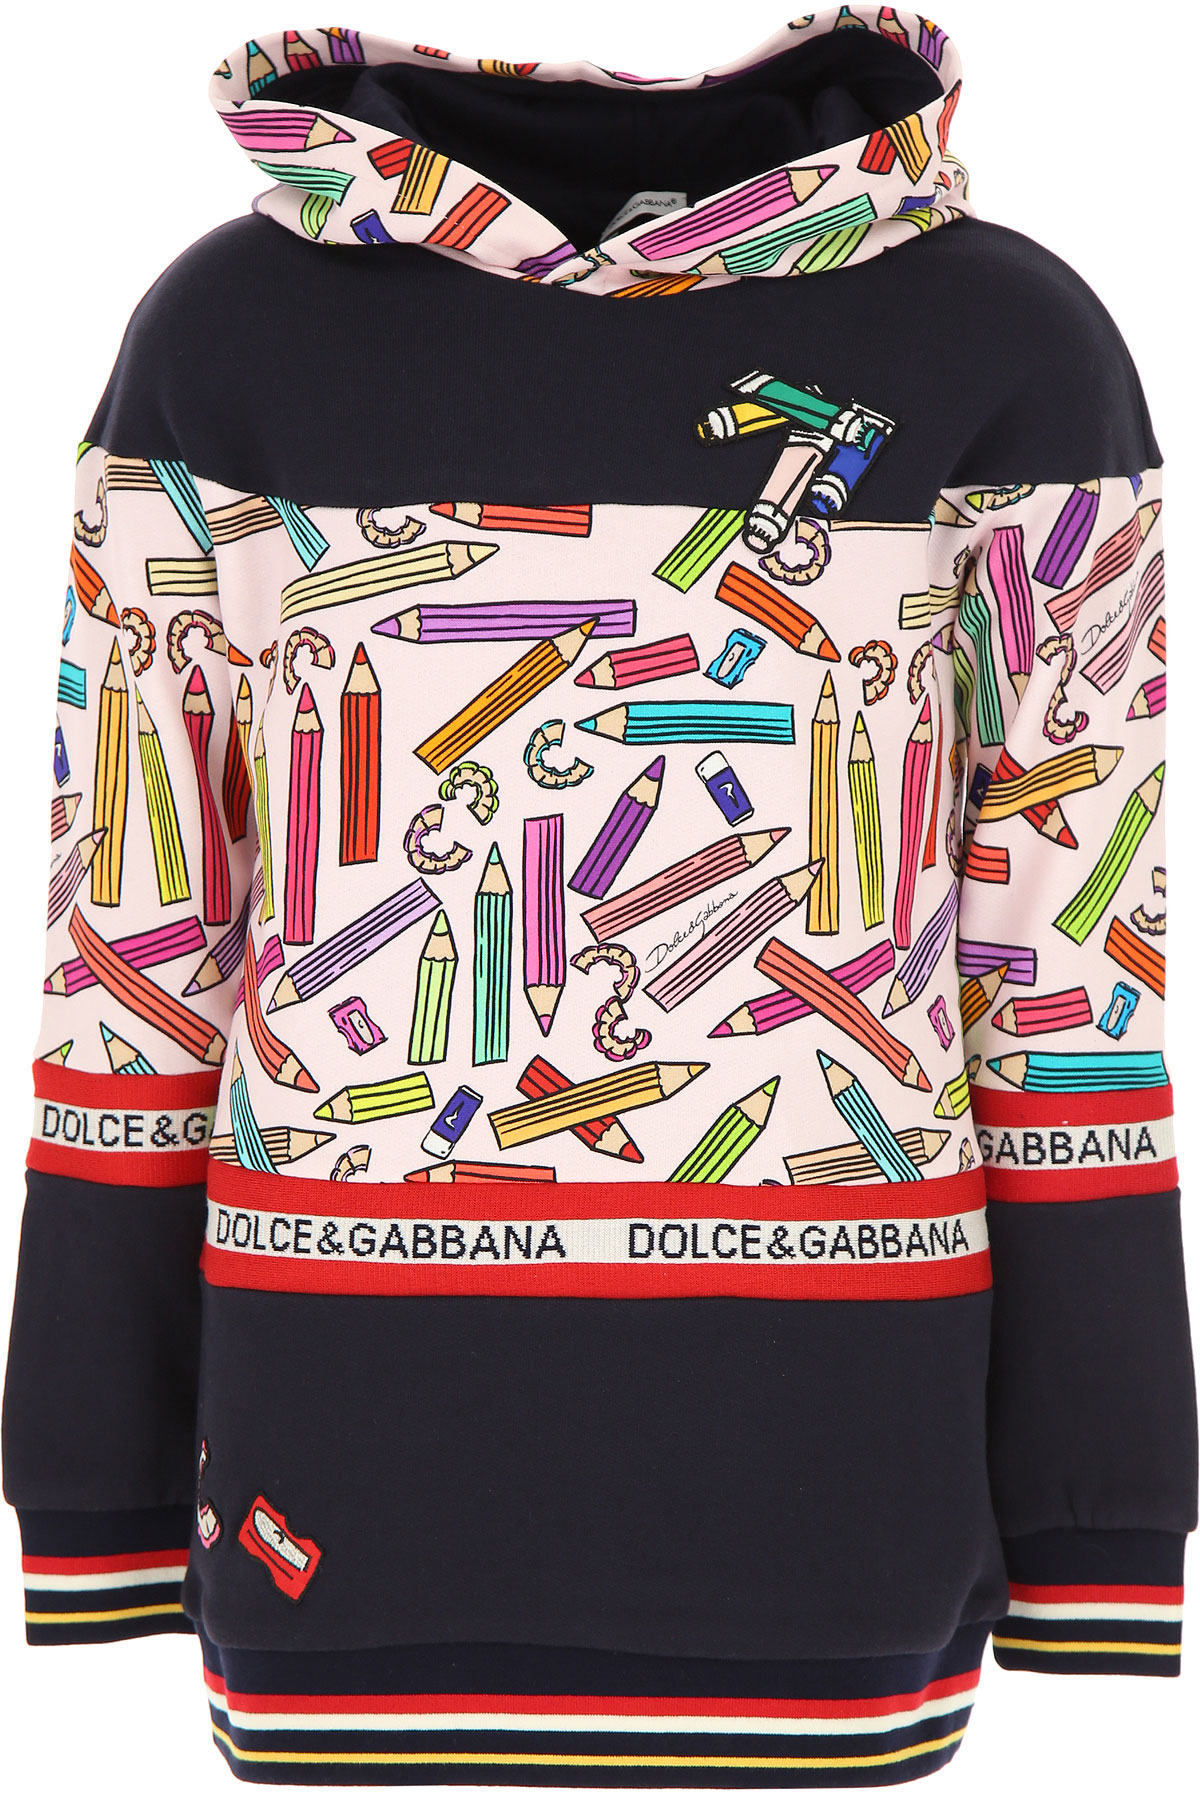 Dolce & Gabbana Kinder Sweatshirt & Kapuzenpullover für Mädchen Günstig im Sale, Blau, Baumwolle, 2017, 6Y 8Y